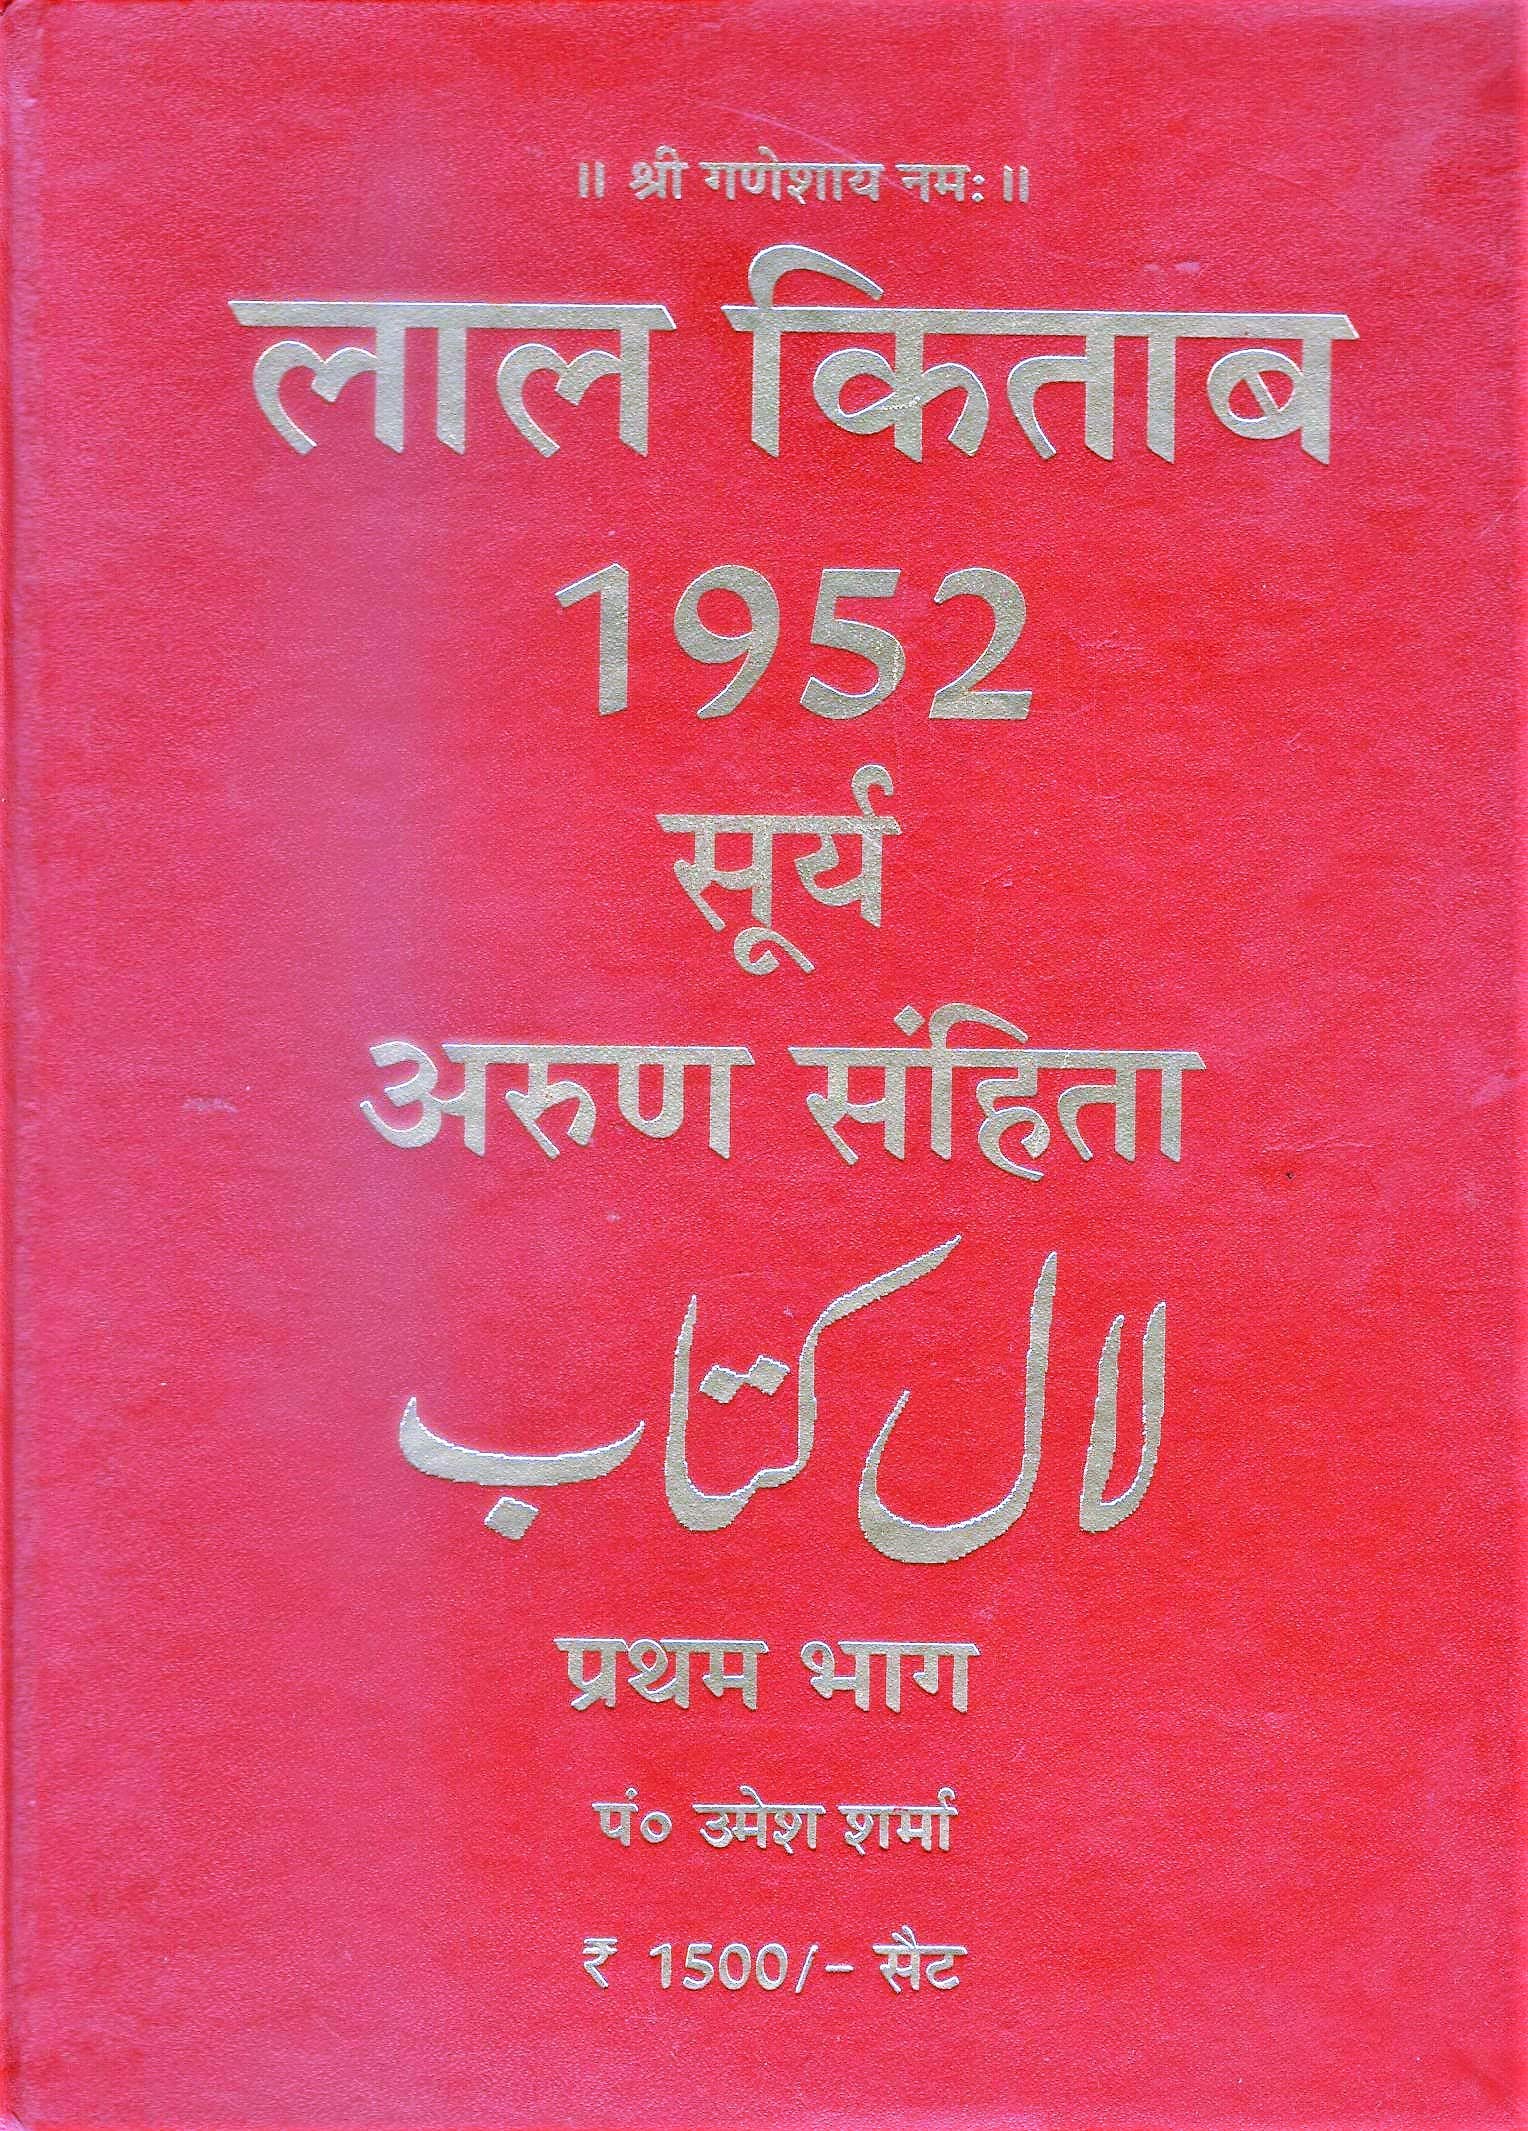 lal kitab in hindi download